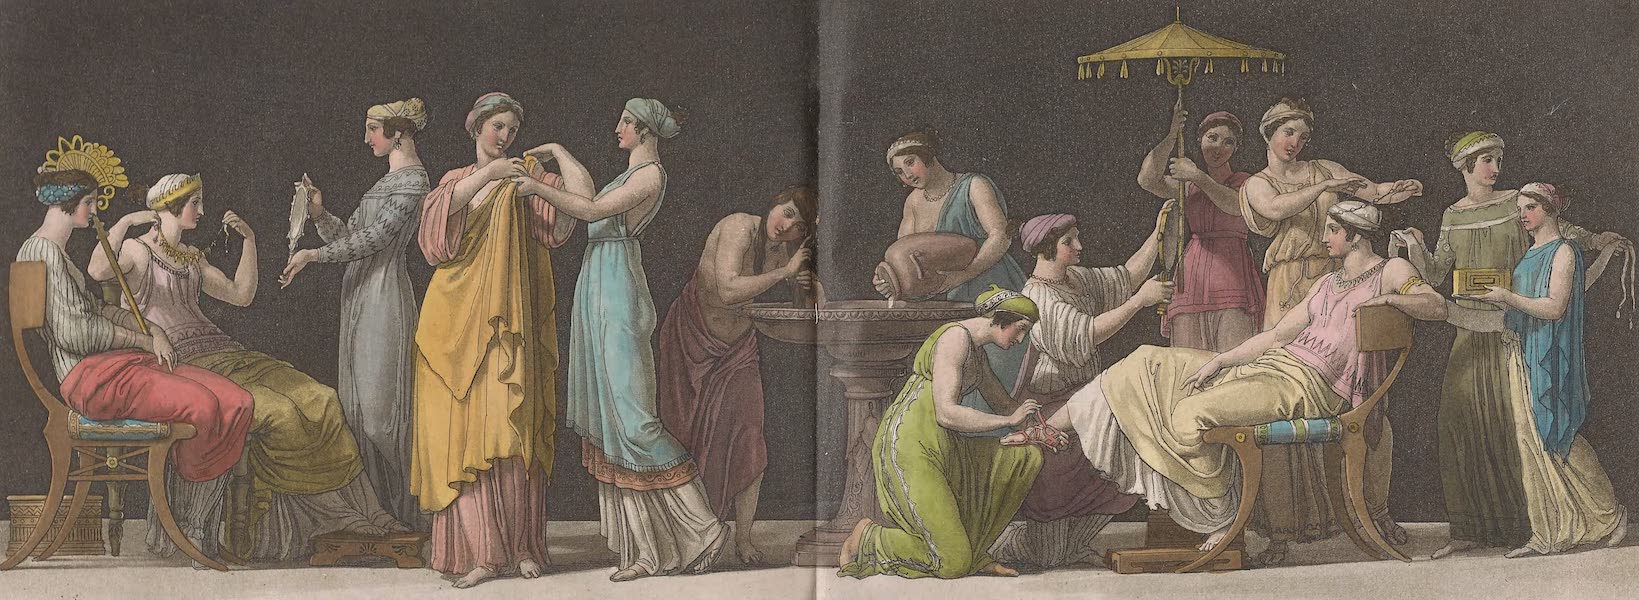 Le Costume Ancien et Moderne [Europe] Vol. 1, Pt. 2 - CXXXIX Toilette des femmes Grecques (1823)